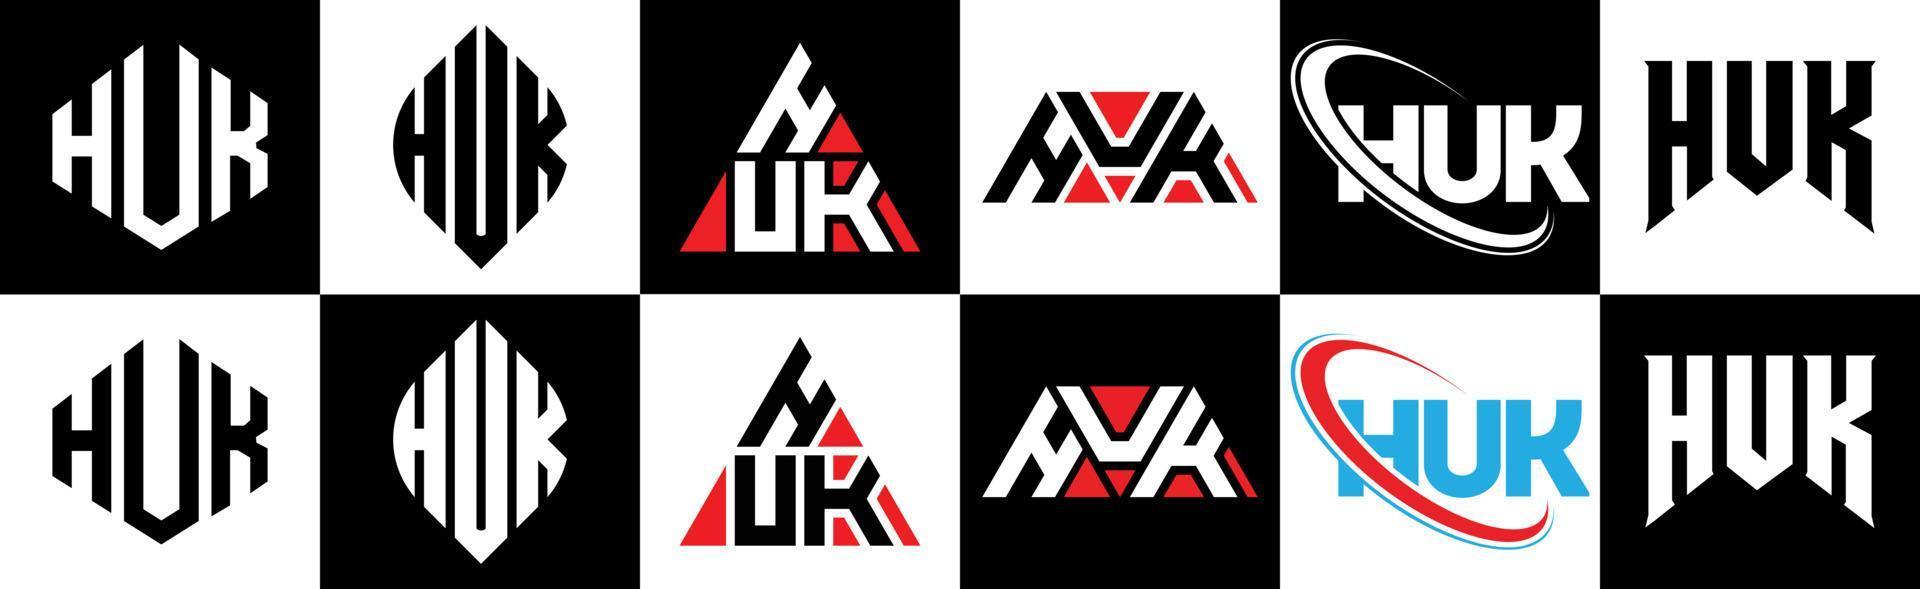 huk-Buchstaben-Logo-Design in sechs Stilen. huk polygon, kreis, dreieck, sechseck, flacher und einfacher stil mit schwarz-weißem buchstabenlogo in einer zeichenfläche. Huk minimalistisches und klassisches Logo vektor